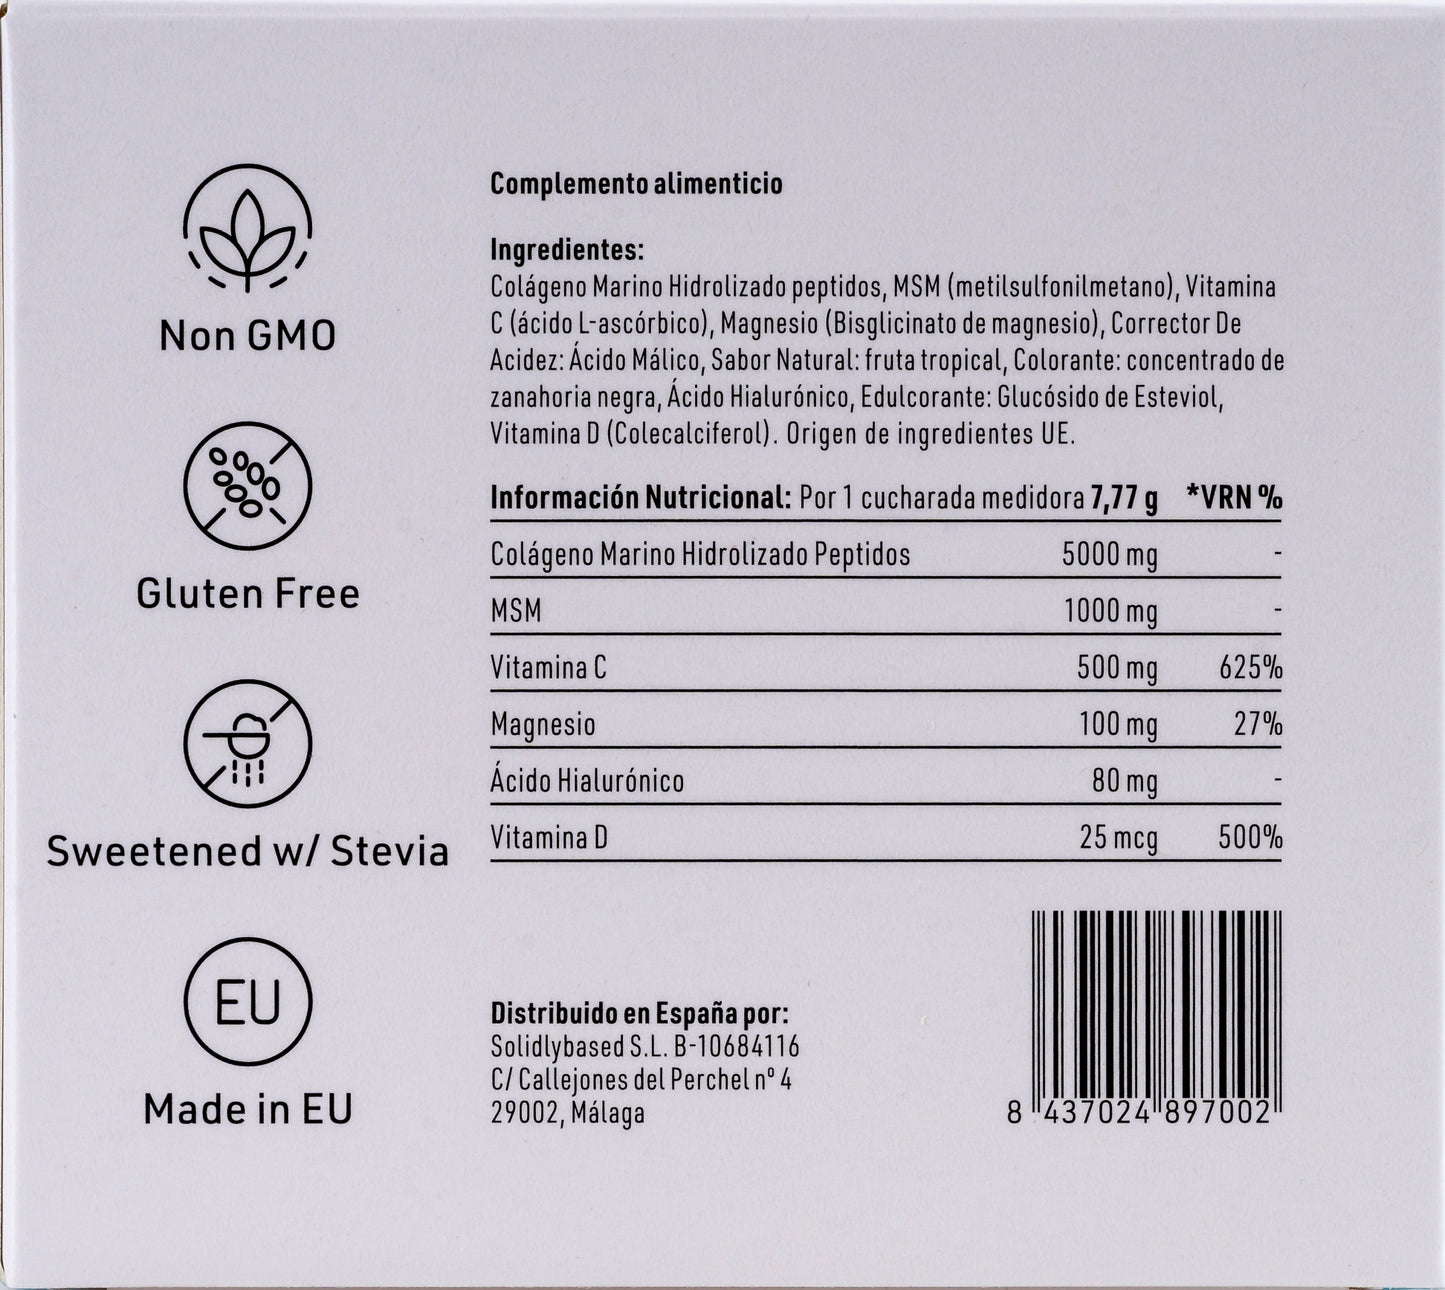 Pack 5 uds de colágeno - 20 % de descuento  *223 gr